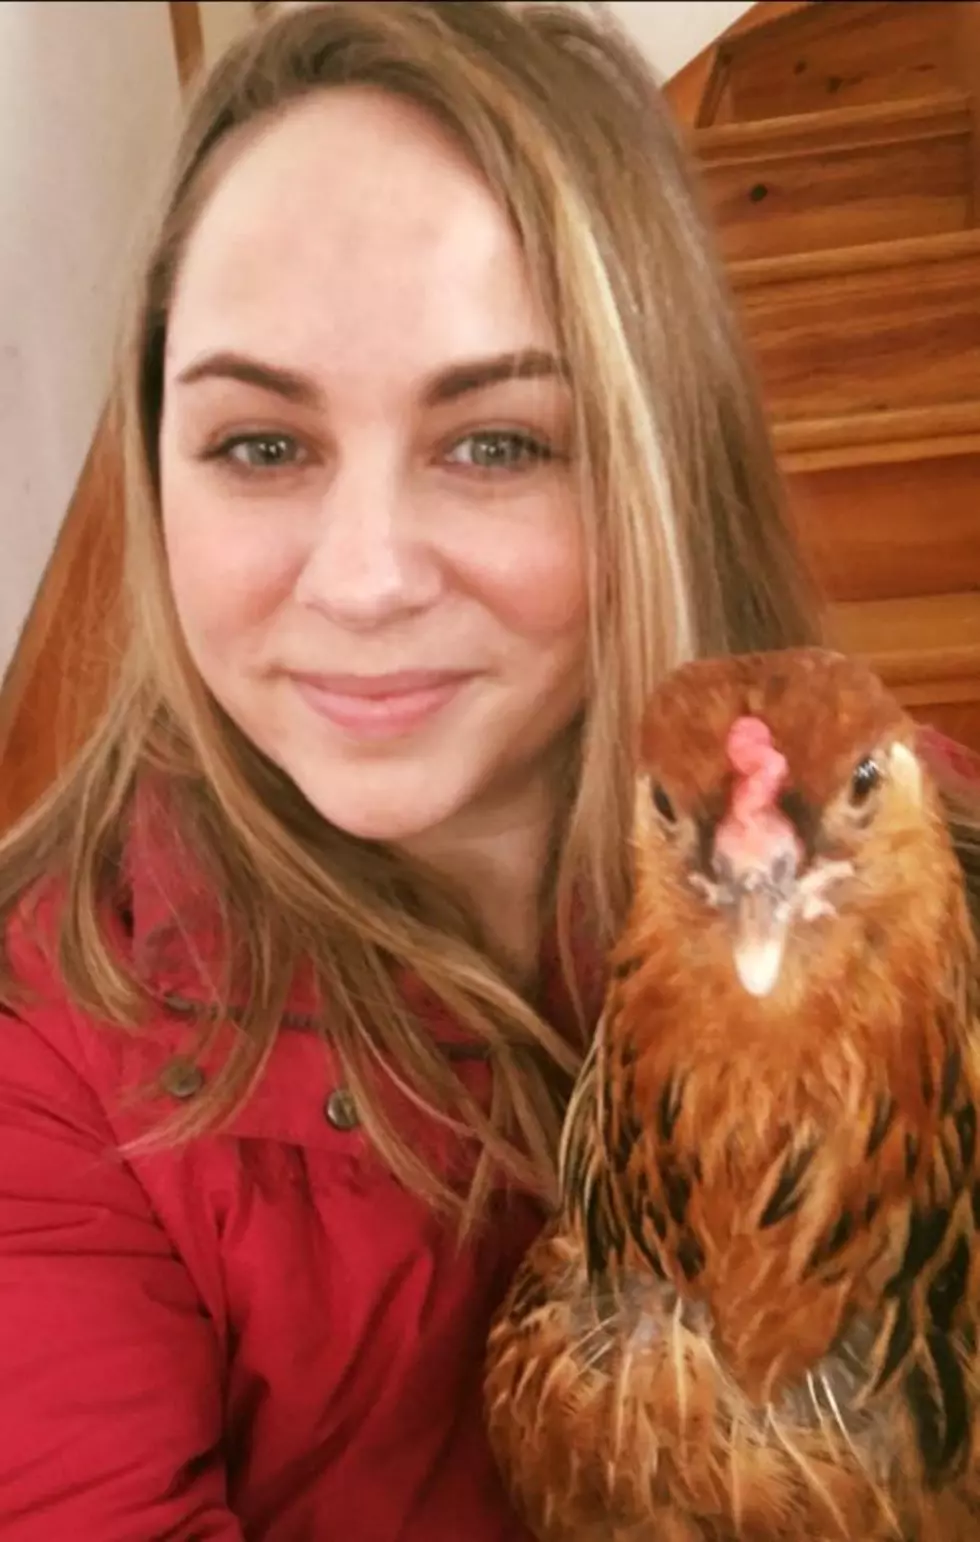 WATCH: NE Chicken Wants to Braap, Braap!